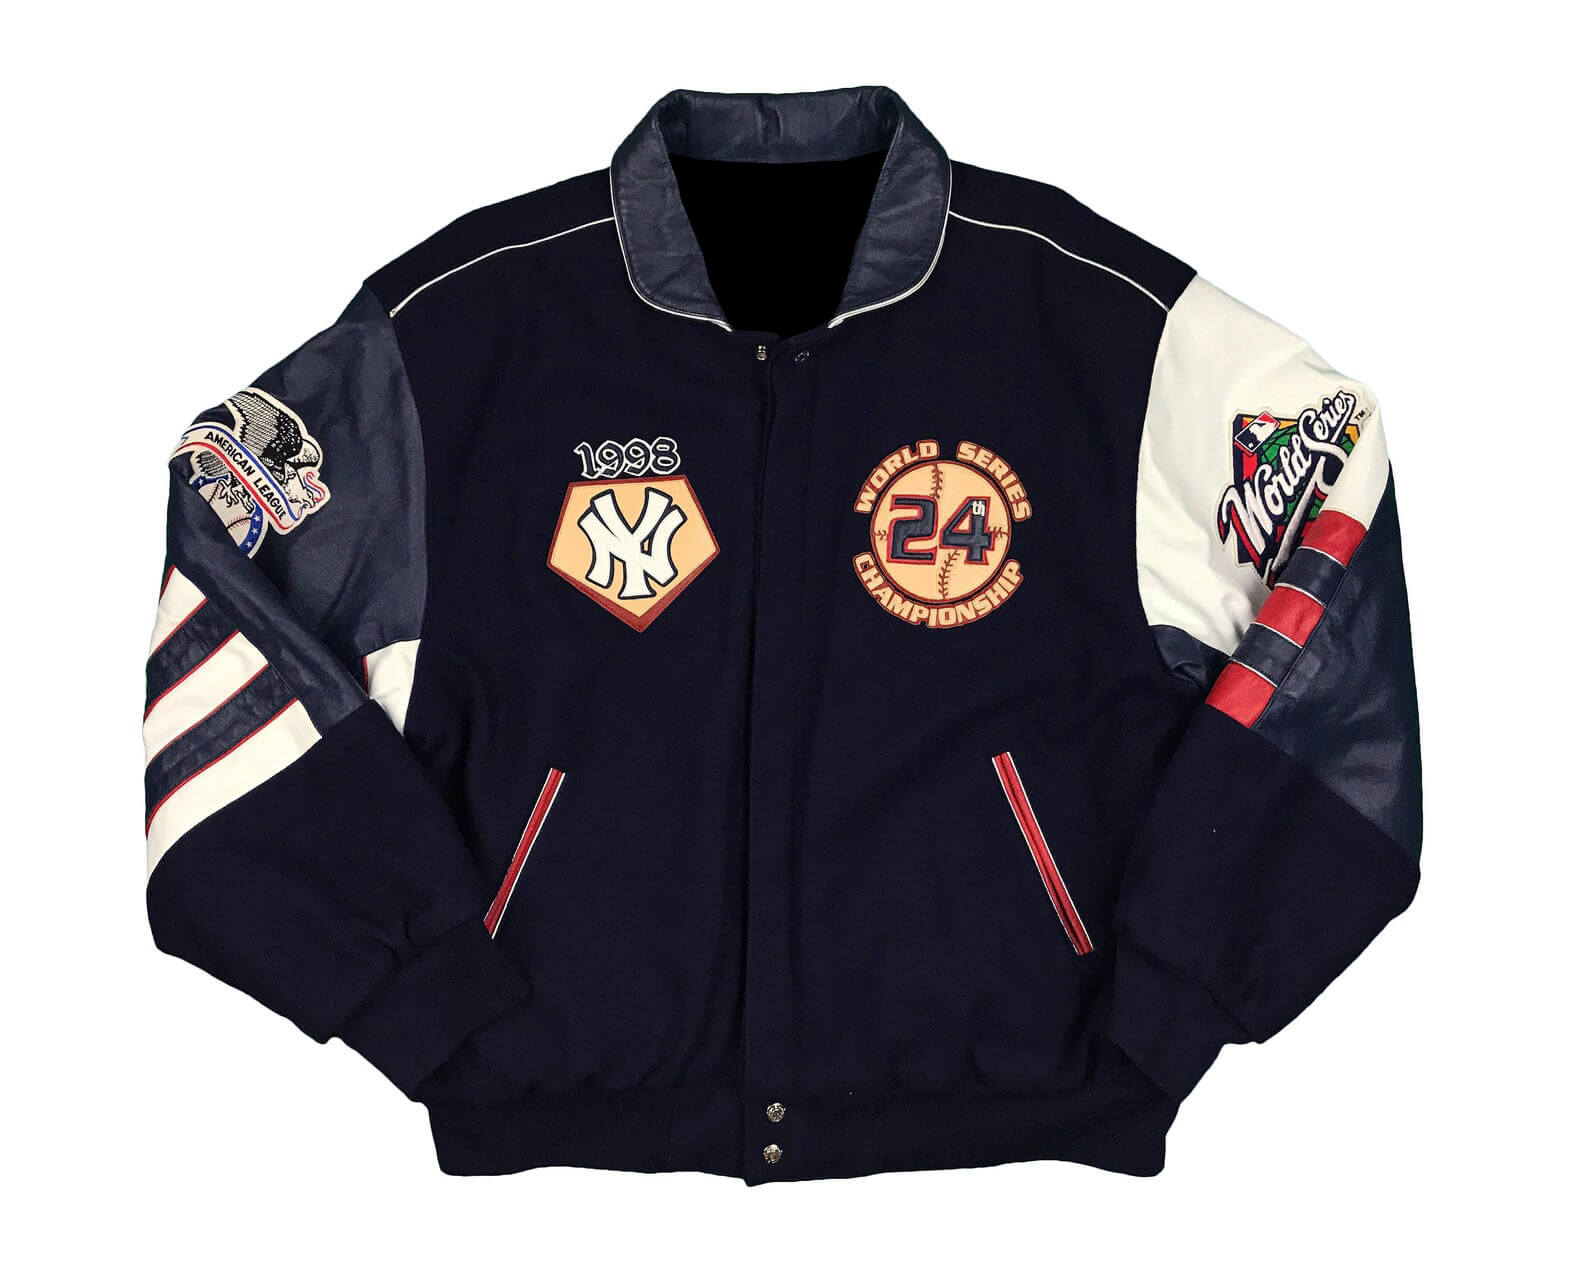 New York Yankees Leather Jeff Hamilton Jacket - Maker of Jacket